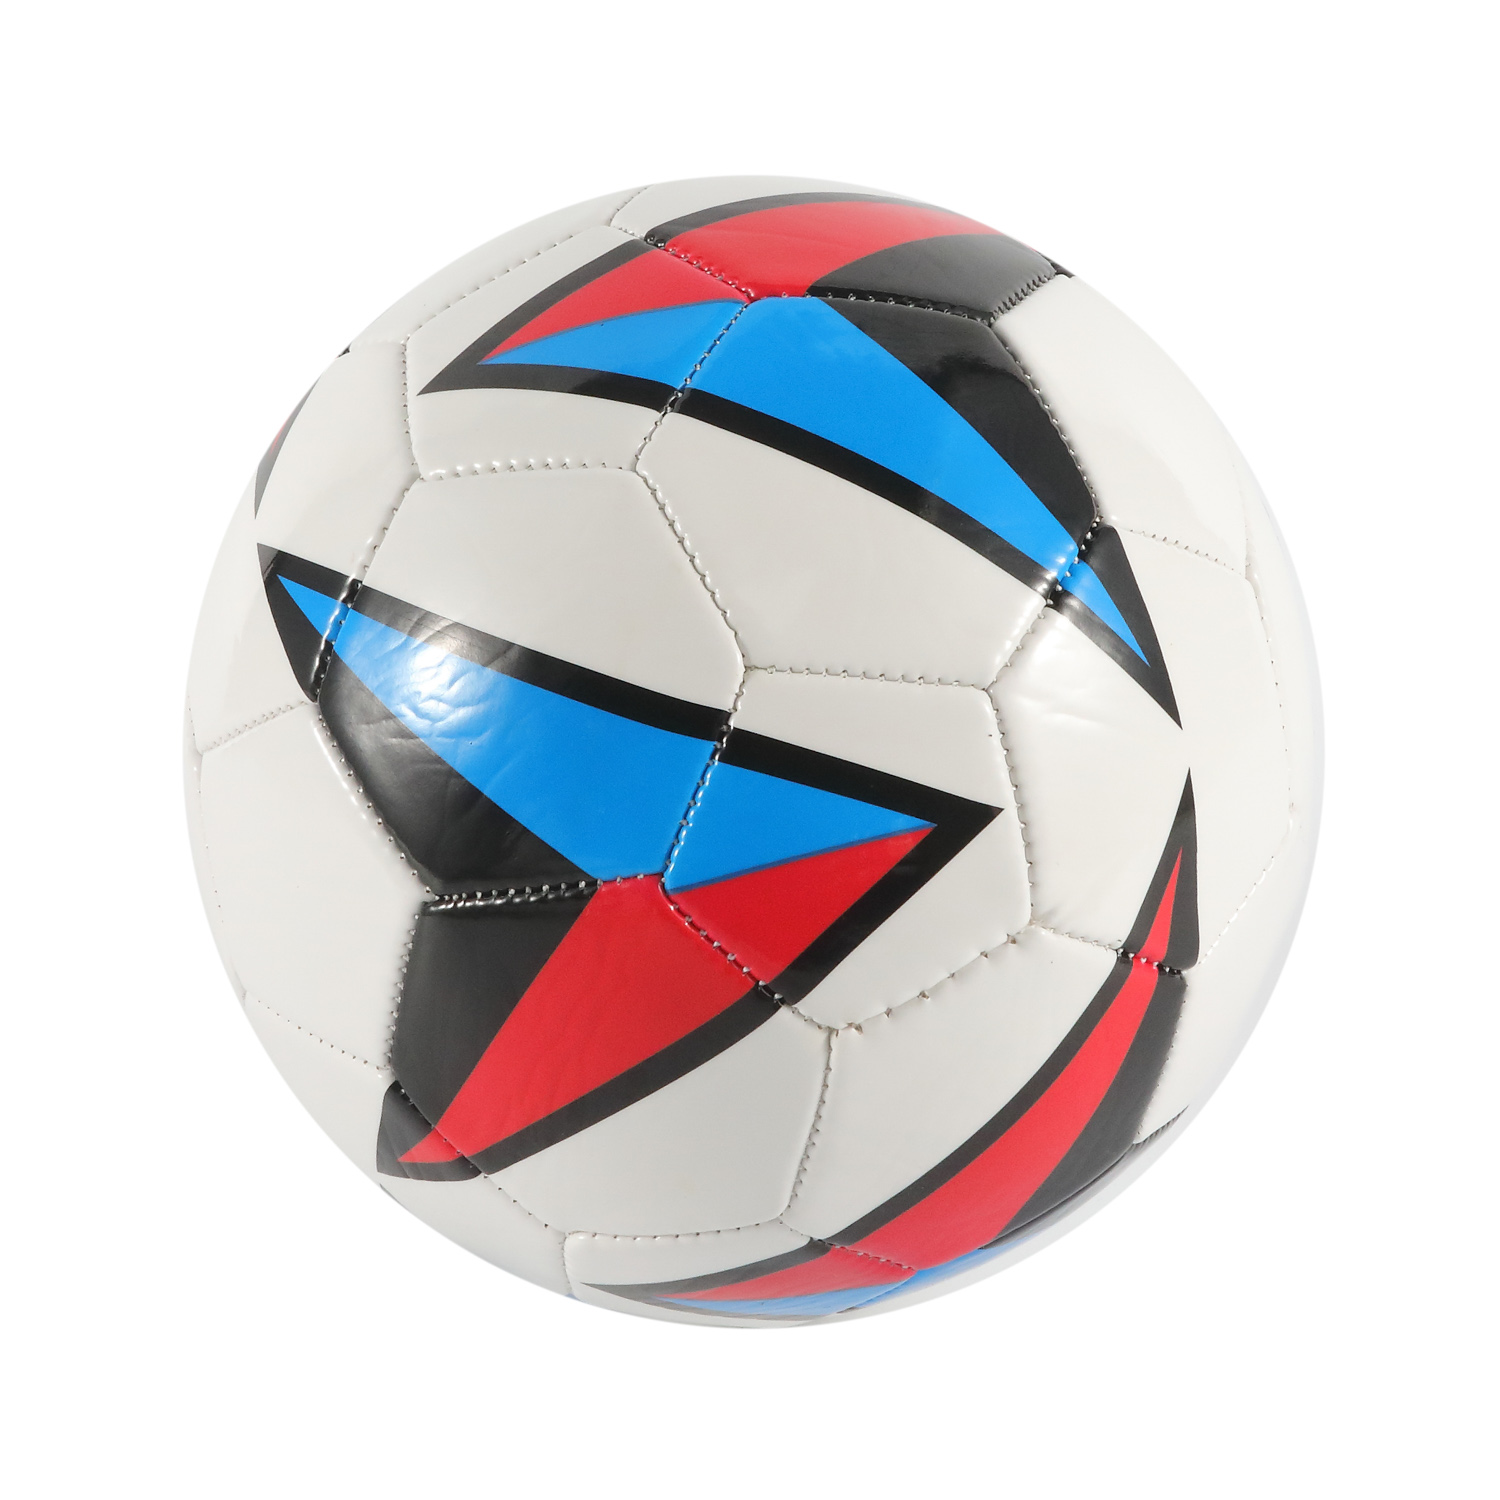 Sportartikel - maschinengenähte PVC-Abdeckung für Fußball, wasserdicht